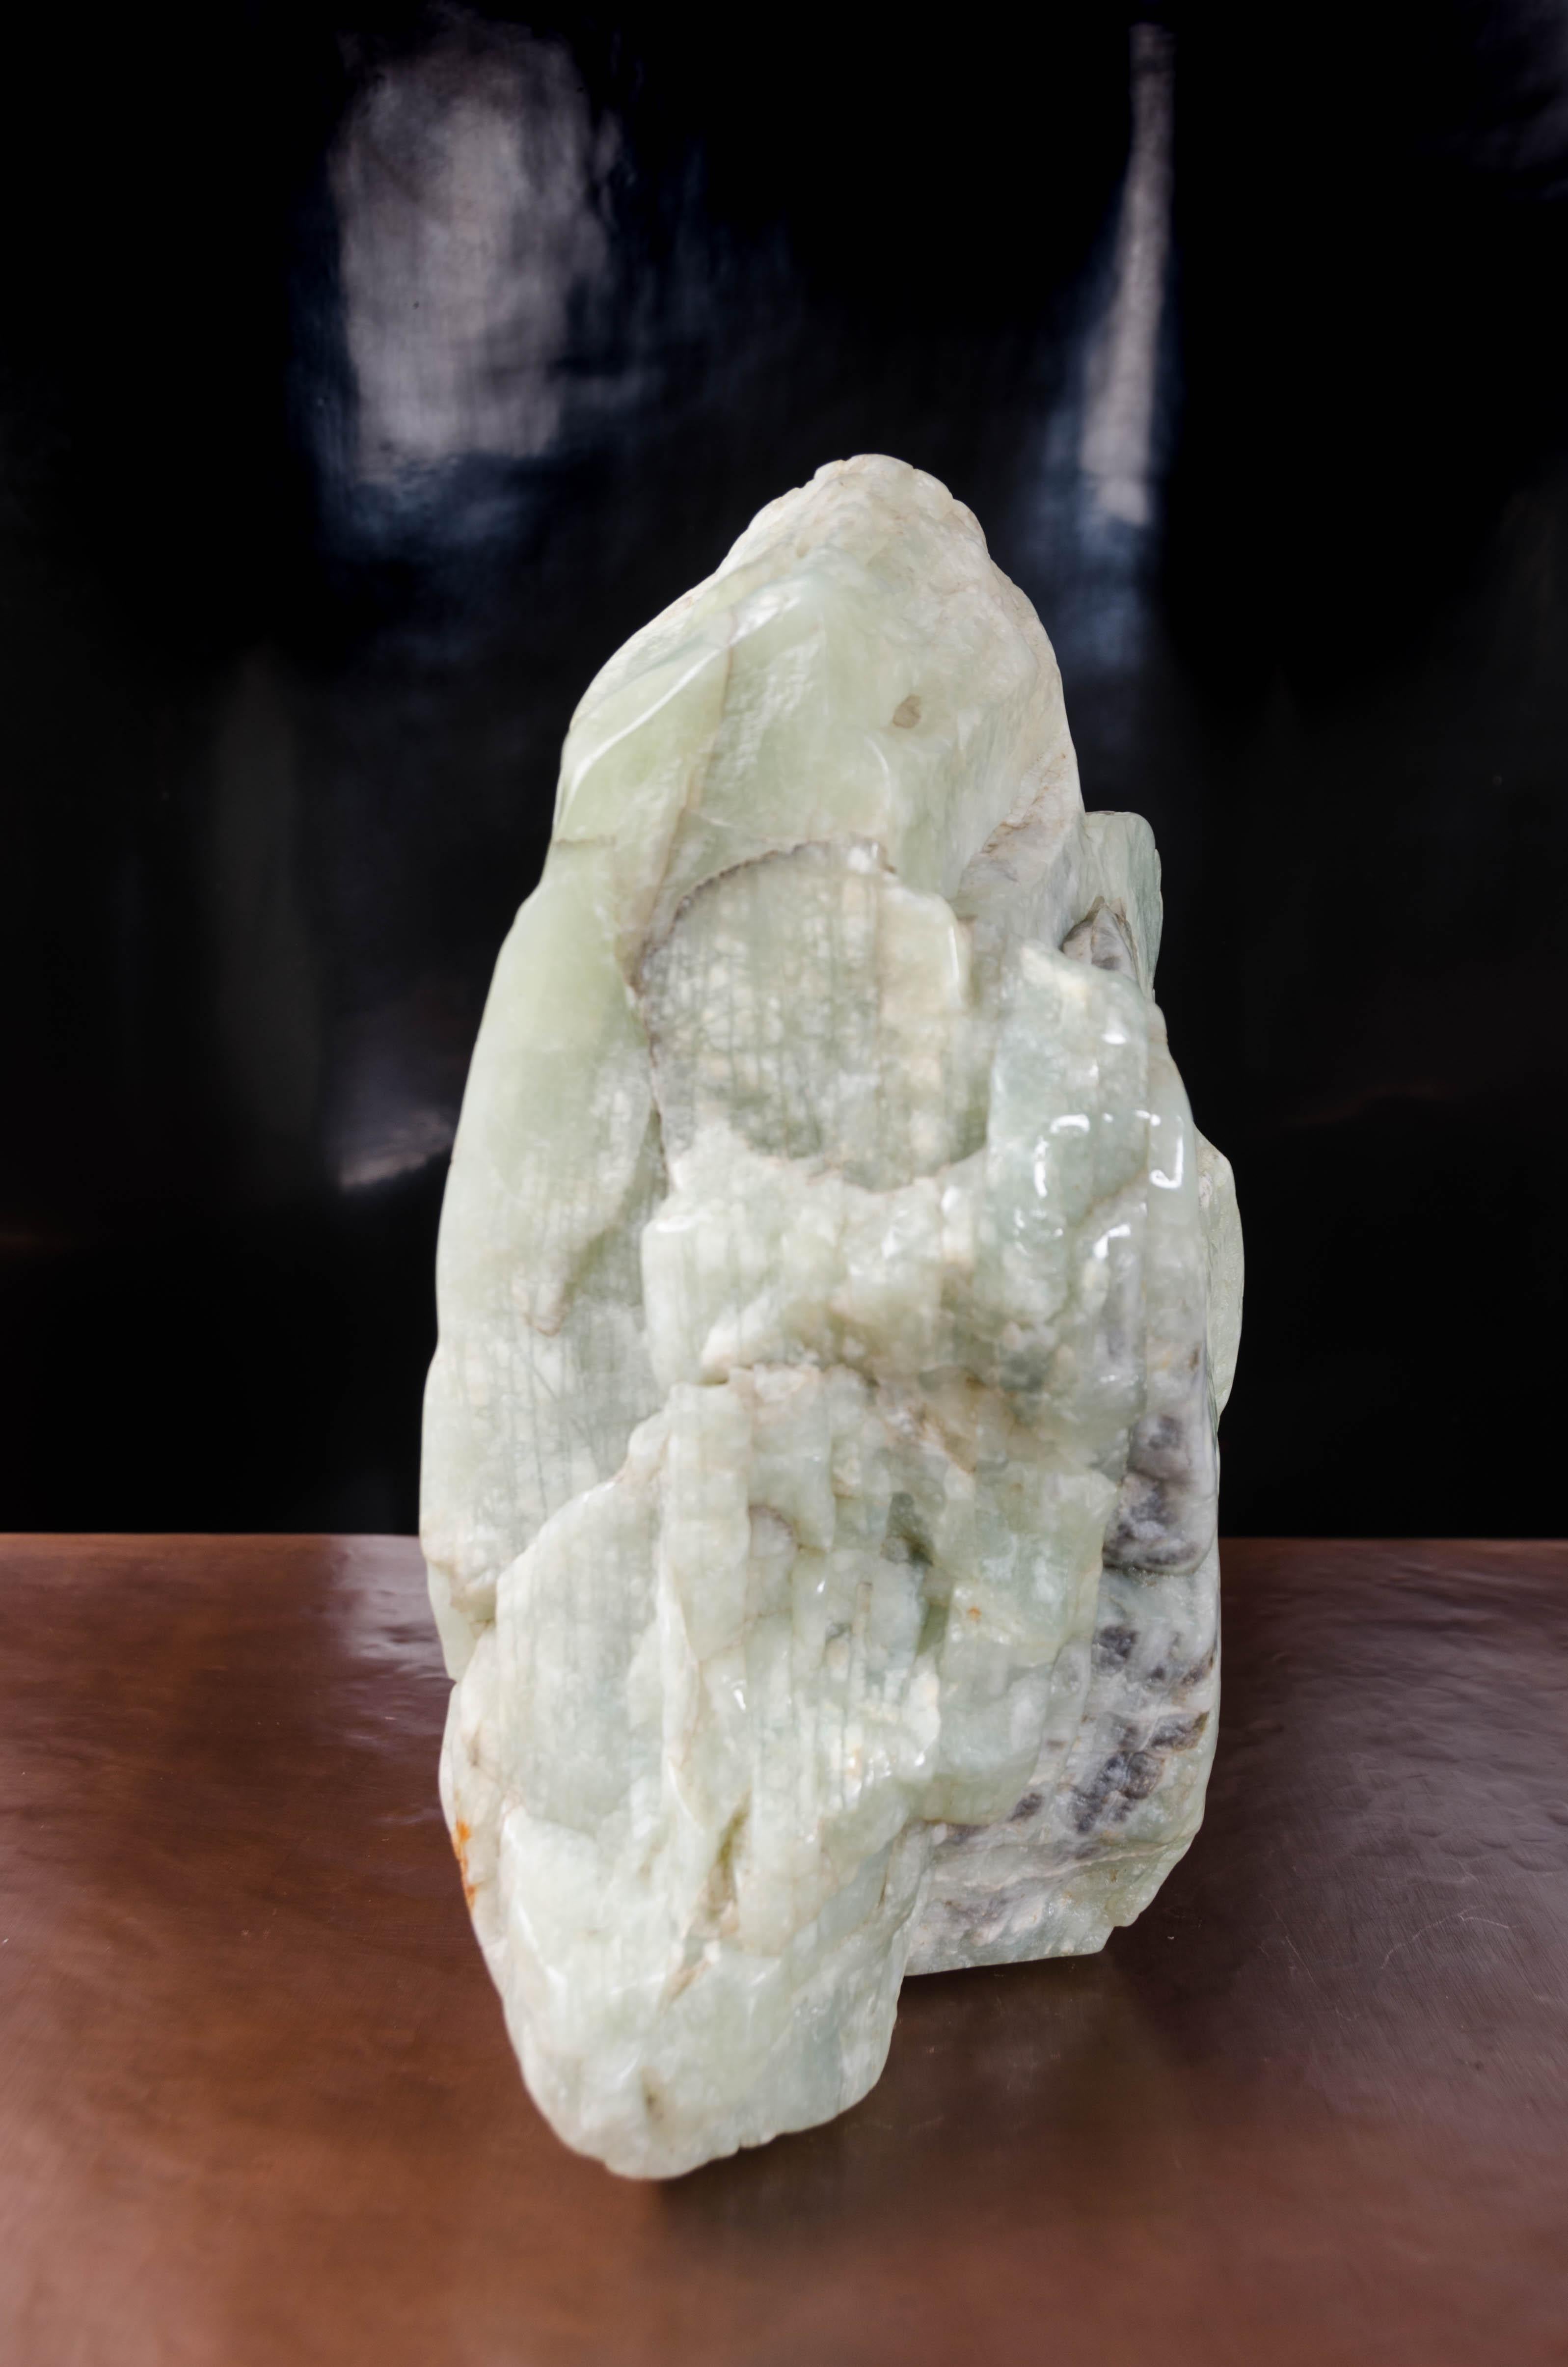 Roche savante
Jade néphrite
Sculpté à la main
Edition limitée
Chaque pièce est fabriquée individuellement et est unique. La couleur, la taille, la forme et les inclusions du jade sont toutes variables.

Connue sous le nom de « pierre du ciel